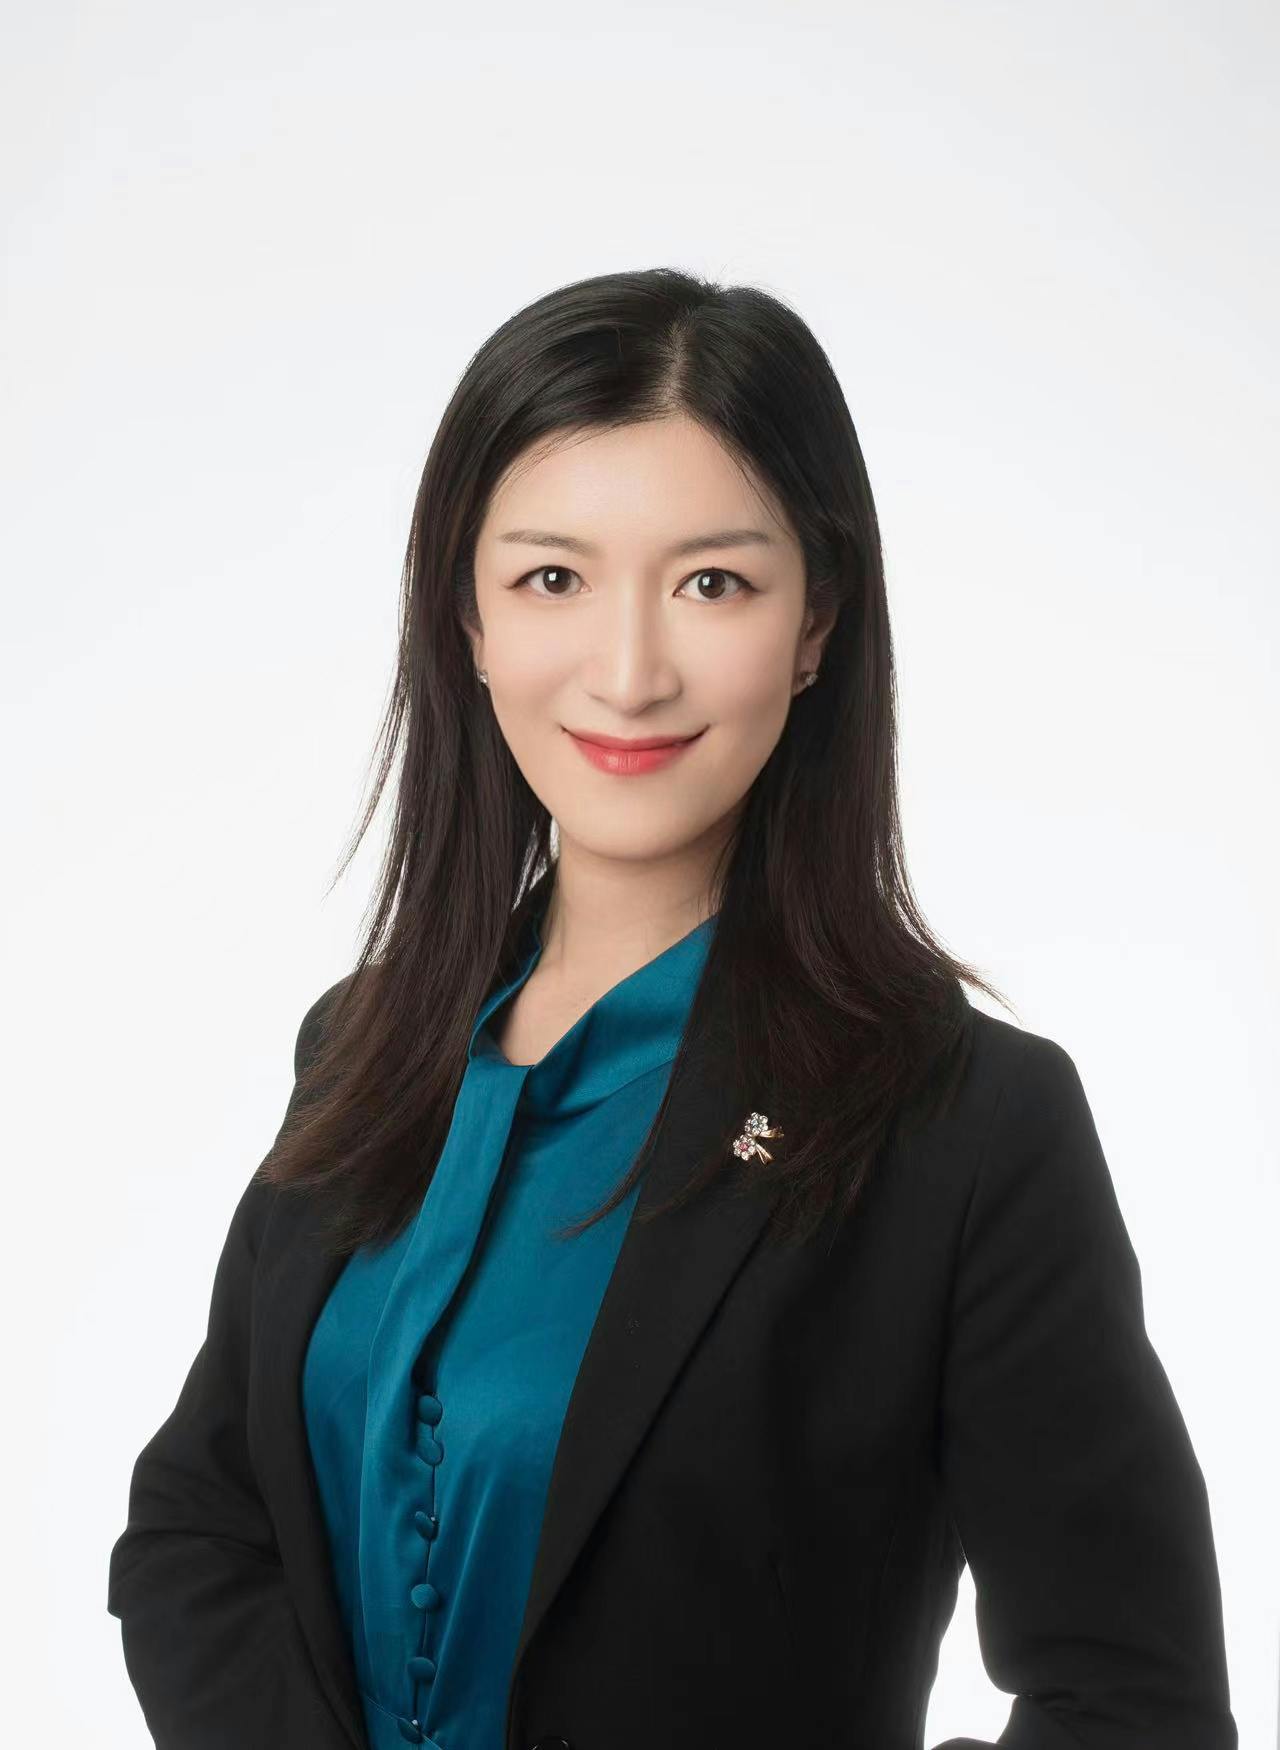 Team member, Ann Zeng